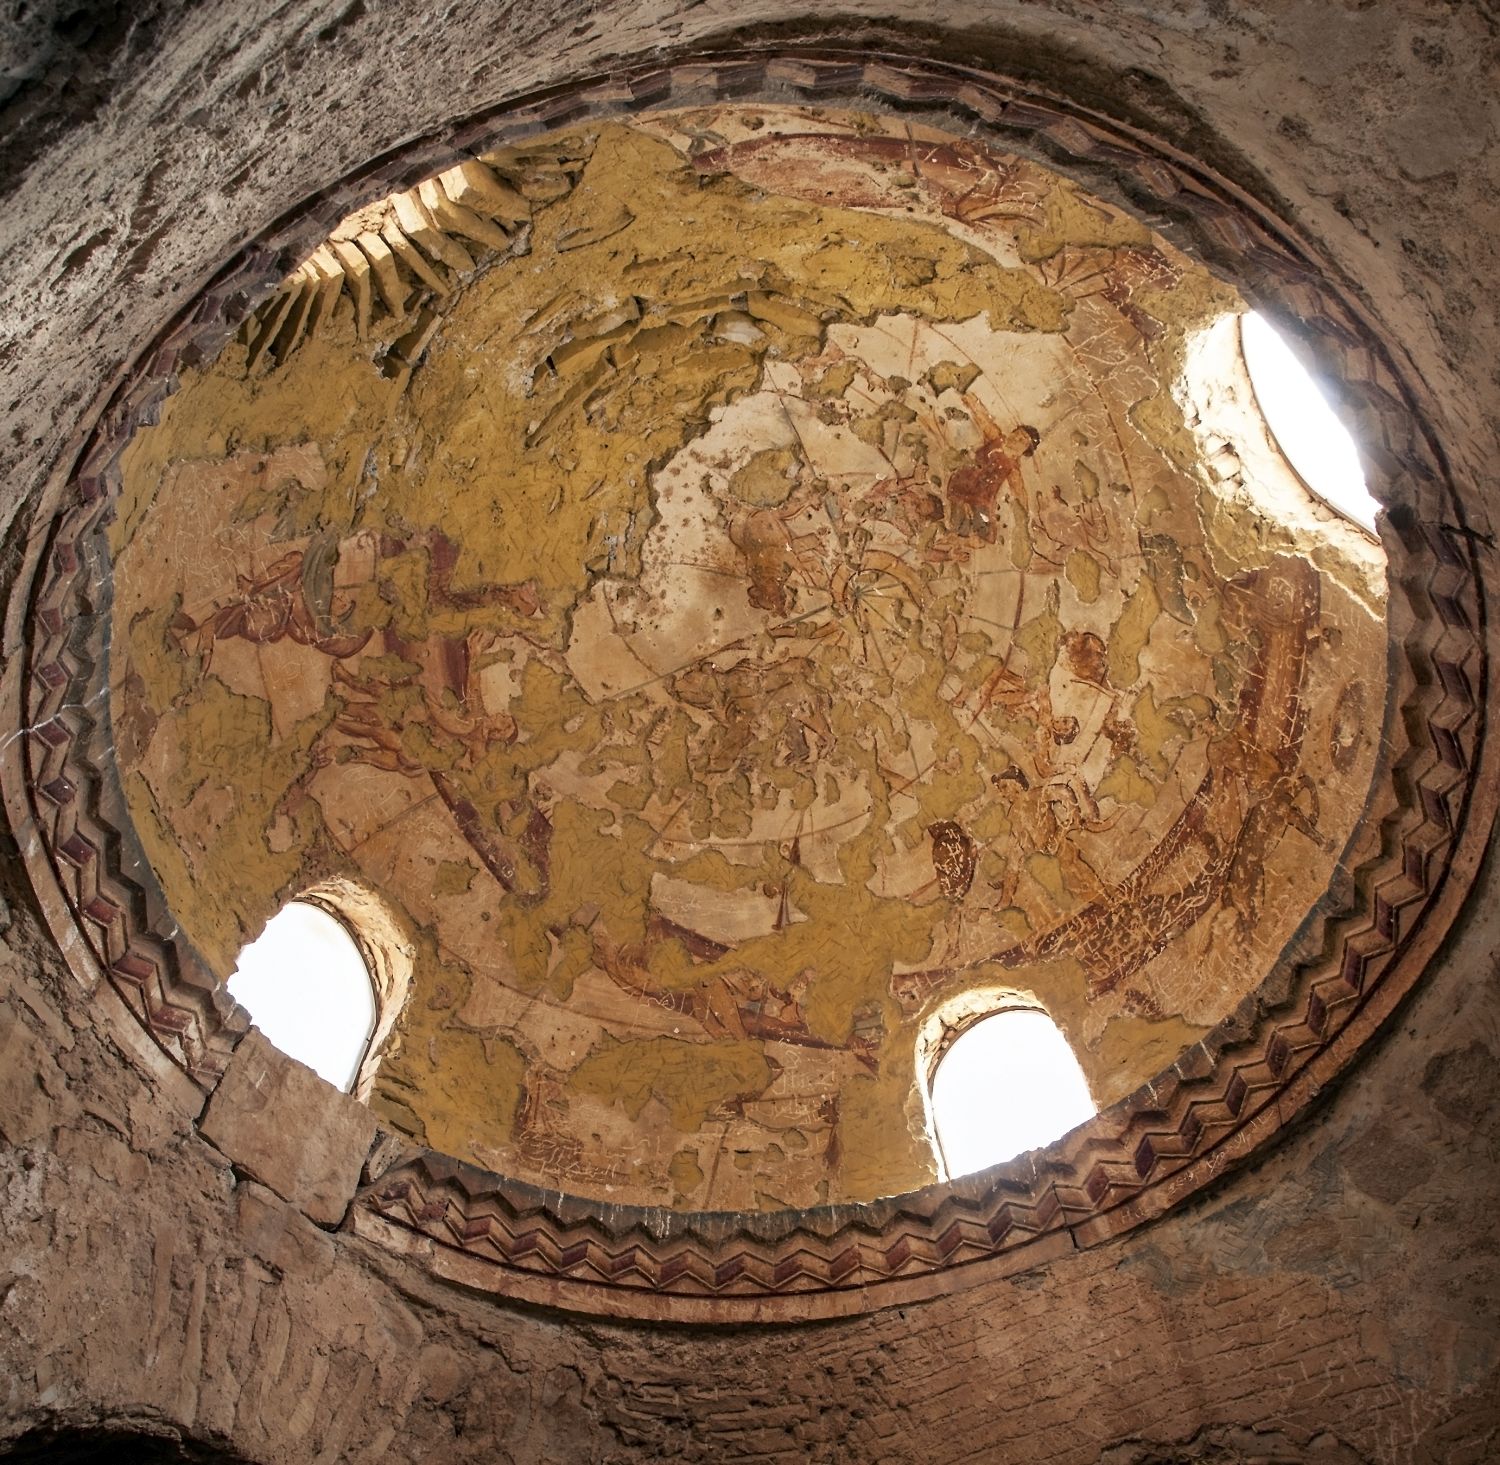 Caldarium: composite view of dome.